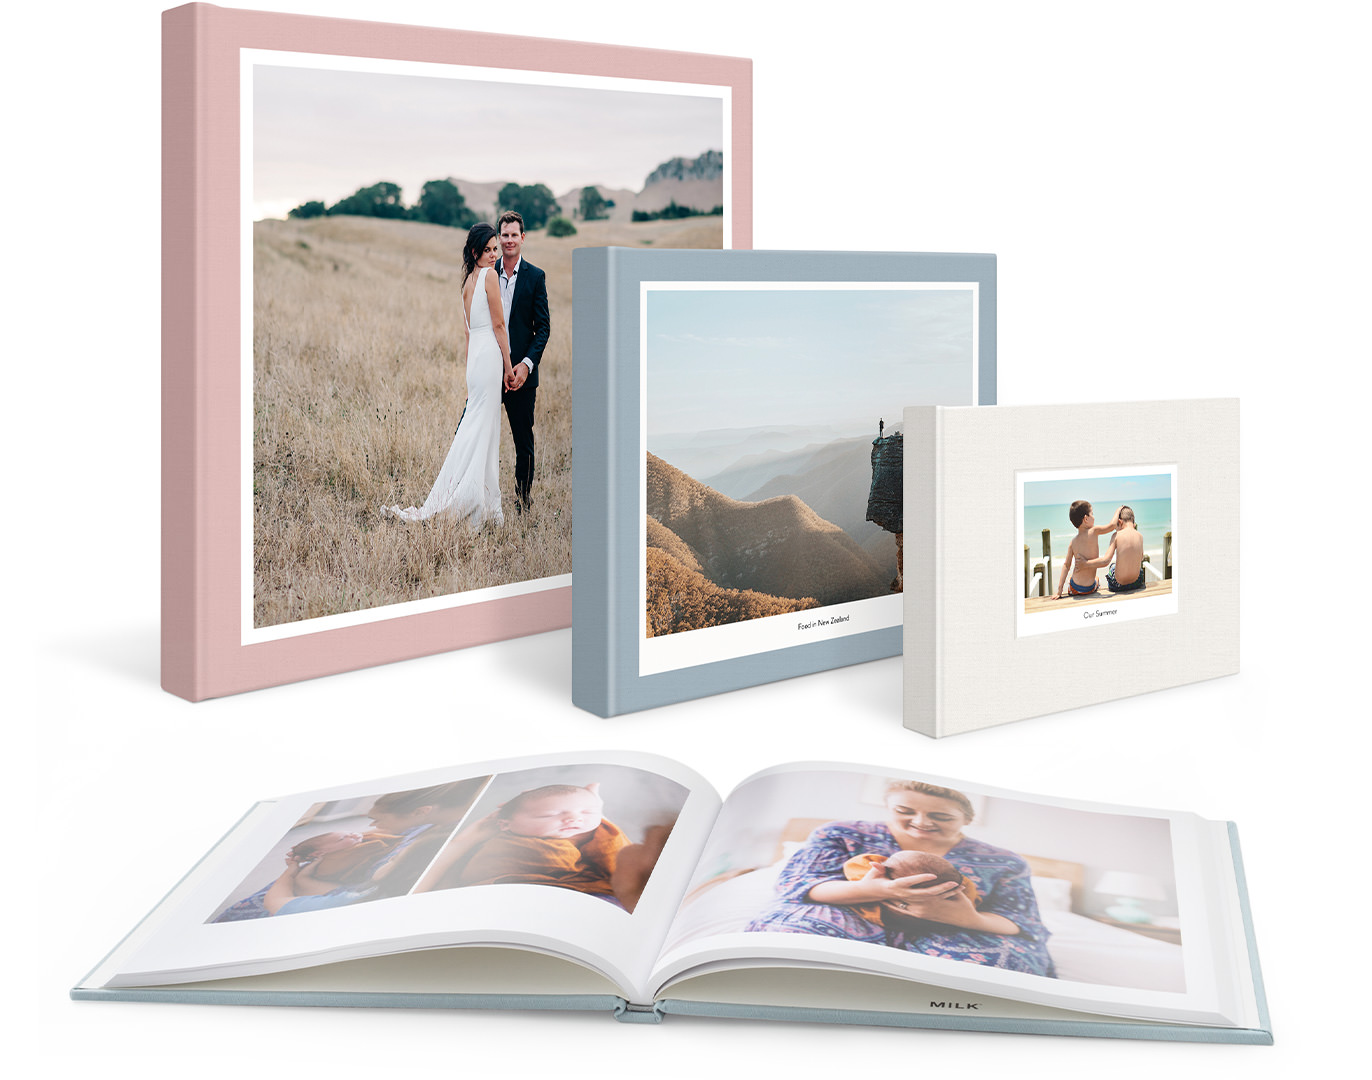 Cuatro fotolibros clásicos, un libro de bodas, un libro de viajes, un libro de familia y uno abierto para exponer las fotos del bebé.